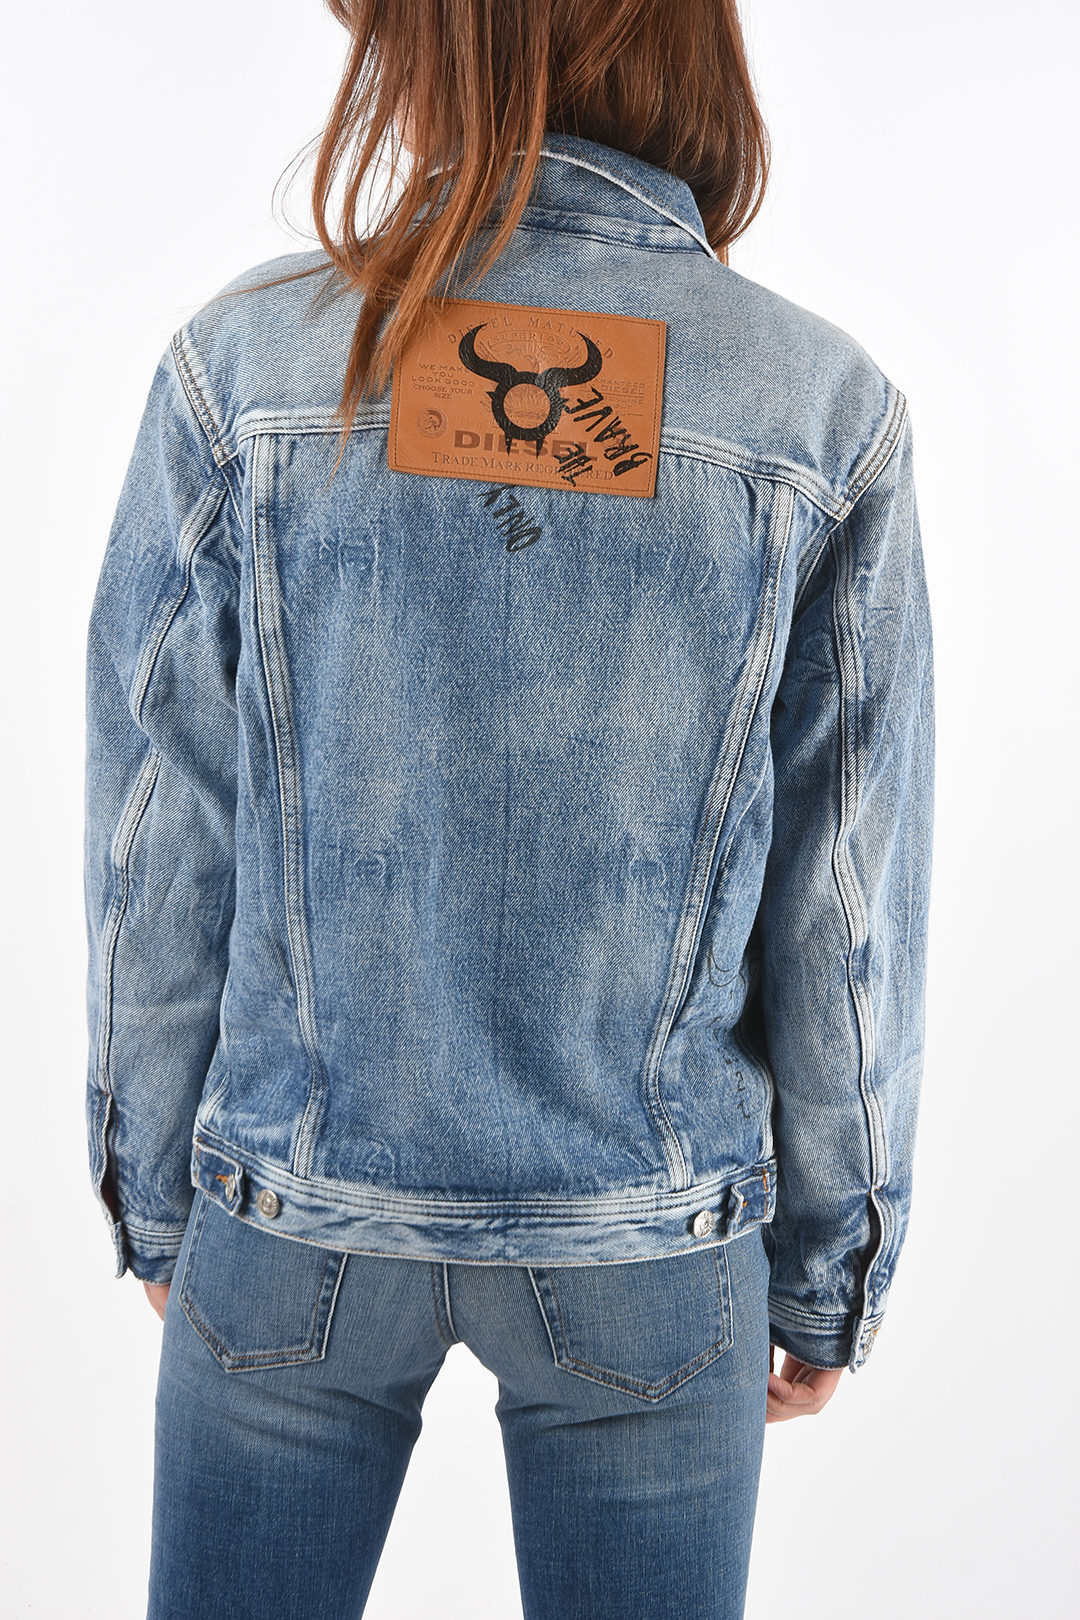 Diesel denim CL-D-BIL jean jacket unisex men women - Glamood Outlet